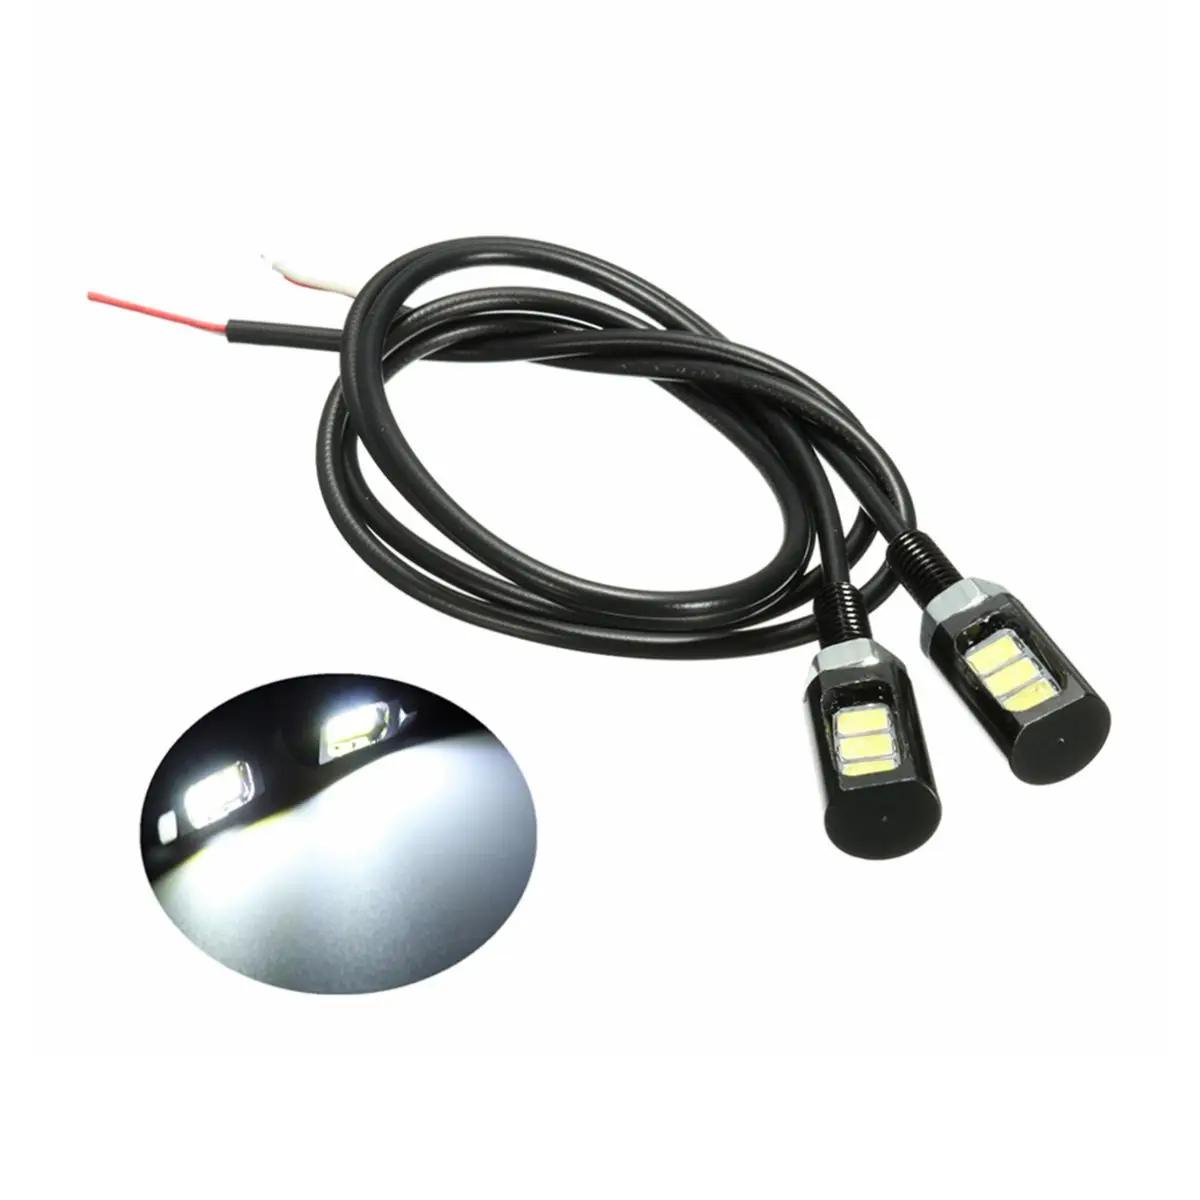 Mofaner 1 пара 3 светодиодный светильник для номерного знака мотоцикла, номерного знака, задний хвостовой винт, болт, светильник, лампа SMD - Цвет: Белый